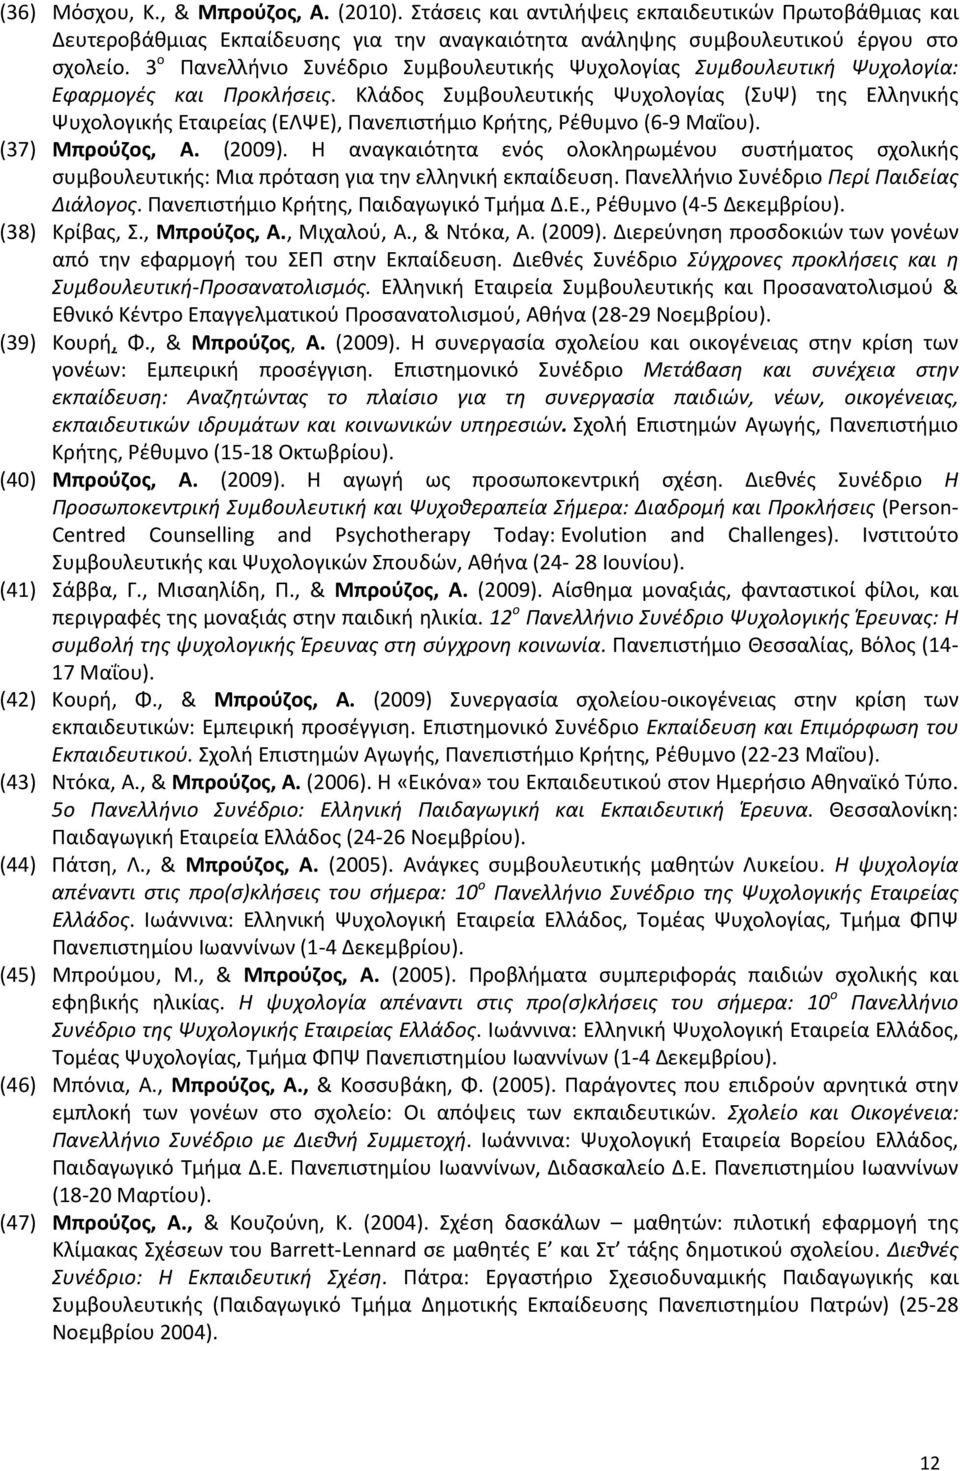 Κλάδος Συμβουλευτικής Ψυχολογίας (ΣυΨ) της Ελληνικής Ψυχολογικής Εταιρείας (ΕΛΨΕ), Πανεπιστήμιο Κρήτης, Ρέθυμνο (6-9 Μαΐου). (37) Μπρούζος, Α. (2009).